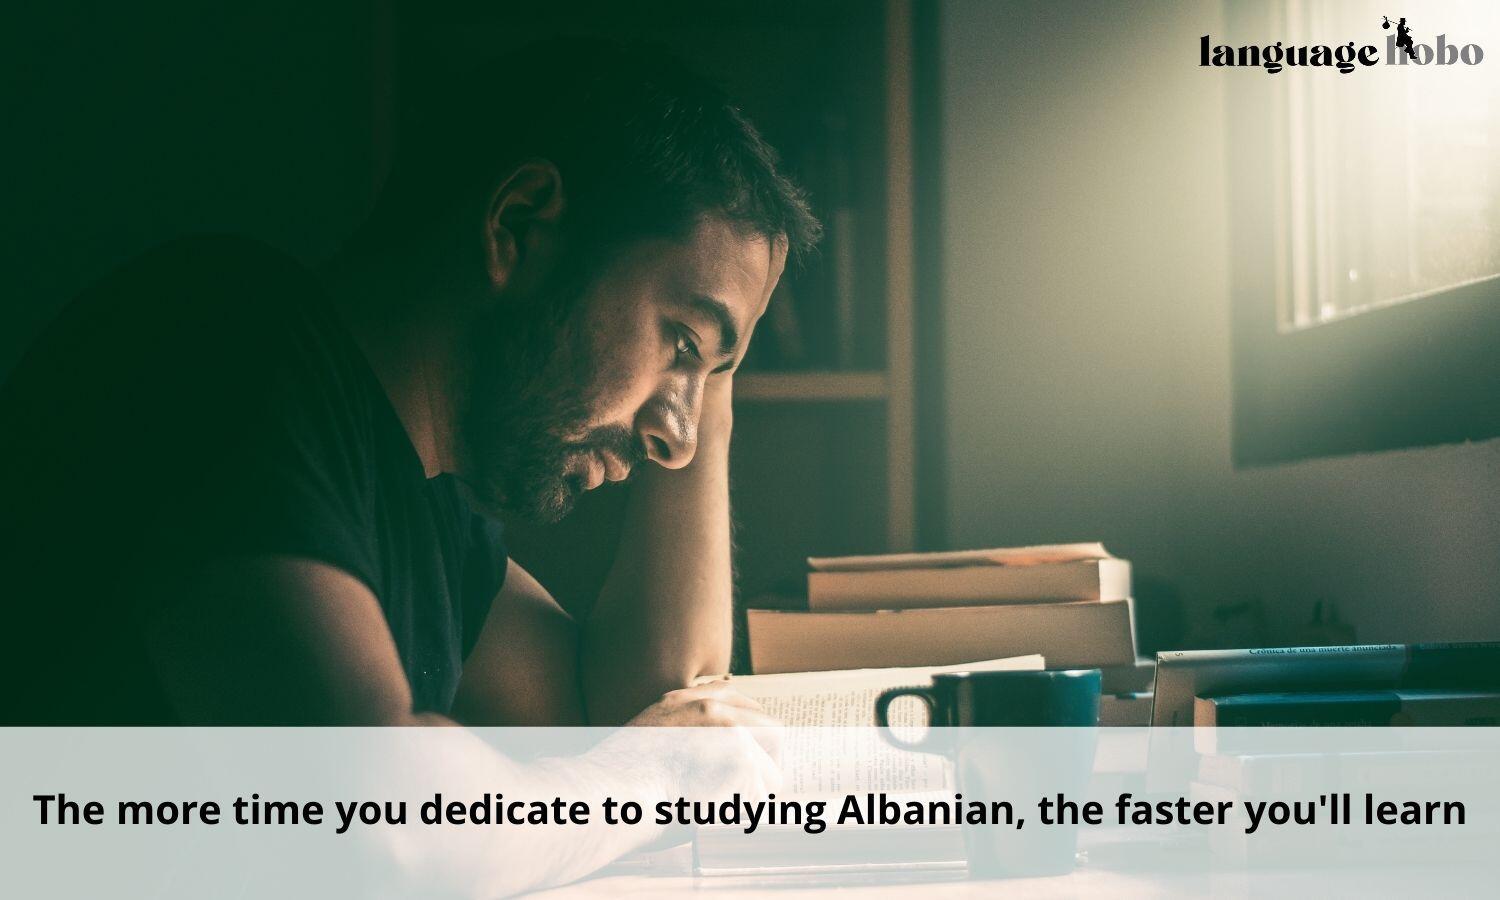 Study albanian often